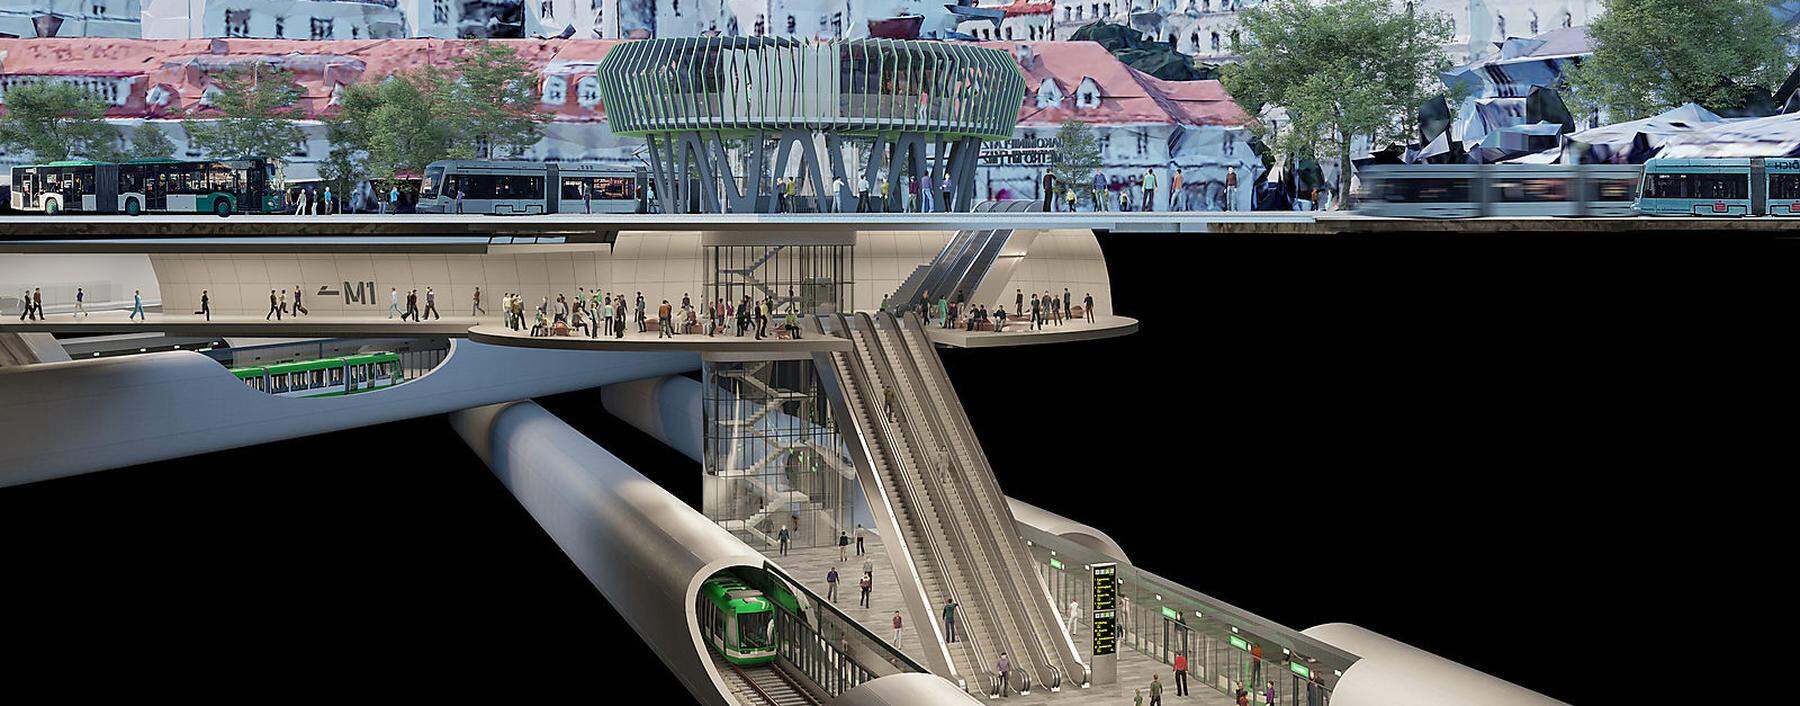 Die Pläne für eine U-Bahn in Graz: Am Jakominiplatz sollen die Linien M1 und M2 zusammentreffen.